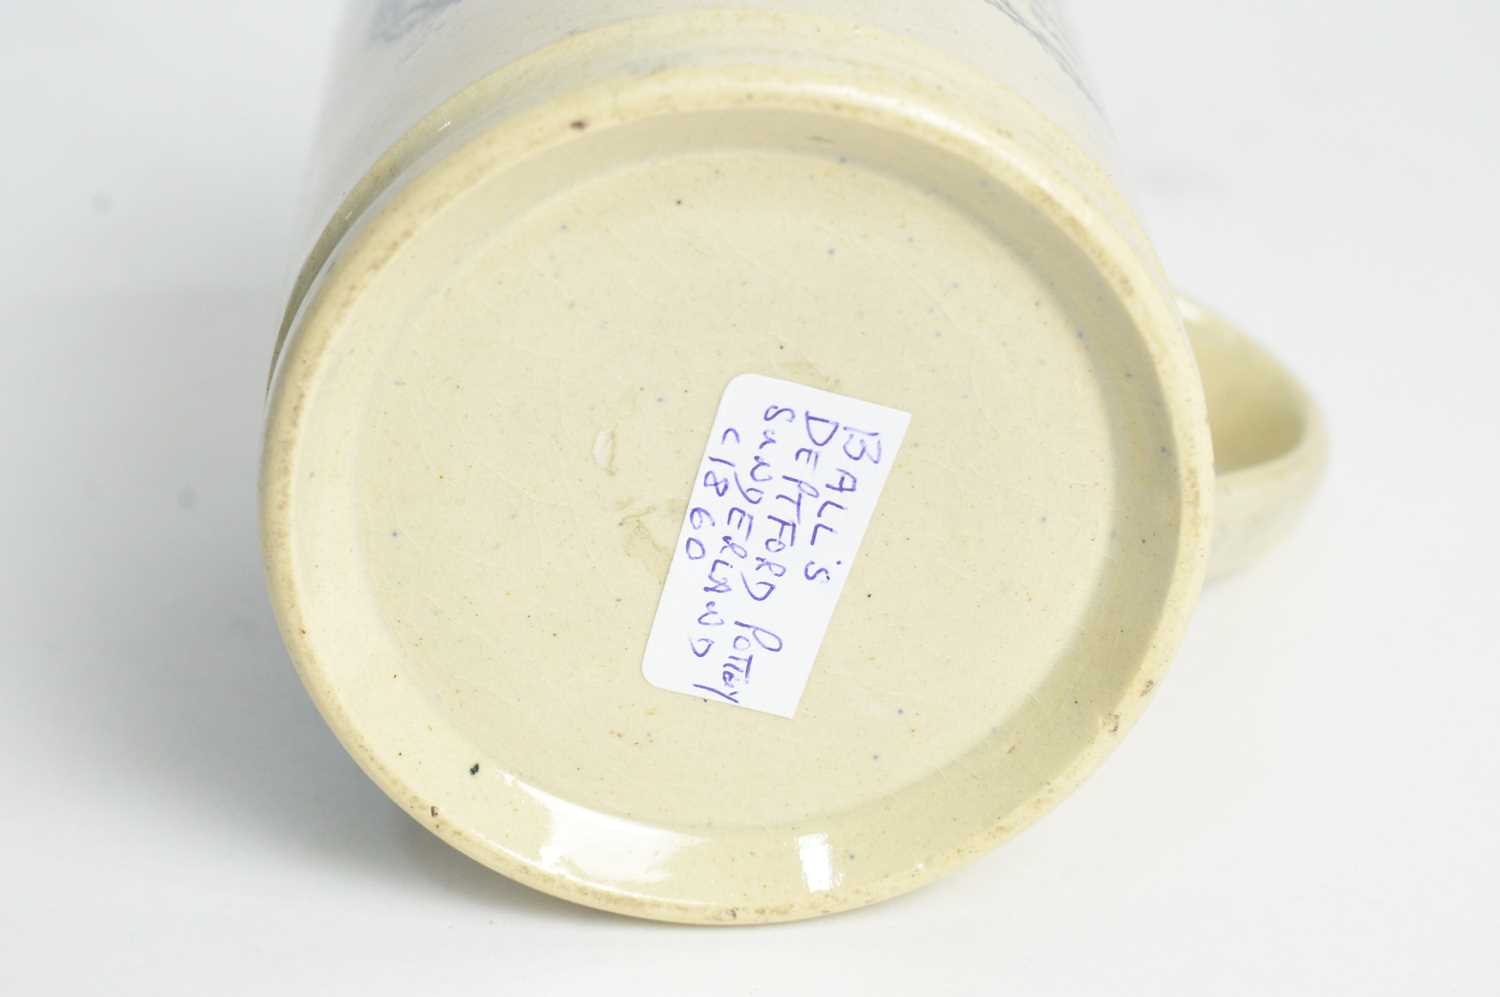 Newcastle Pottery Creamware frog mug, and a Balls Deptford frog mug - Image 5 of 8